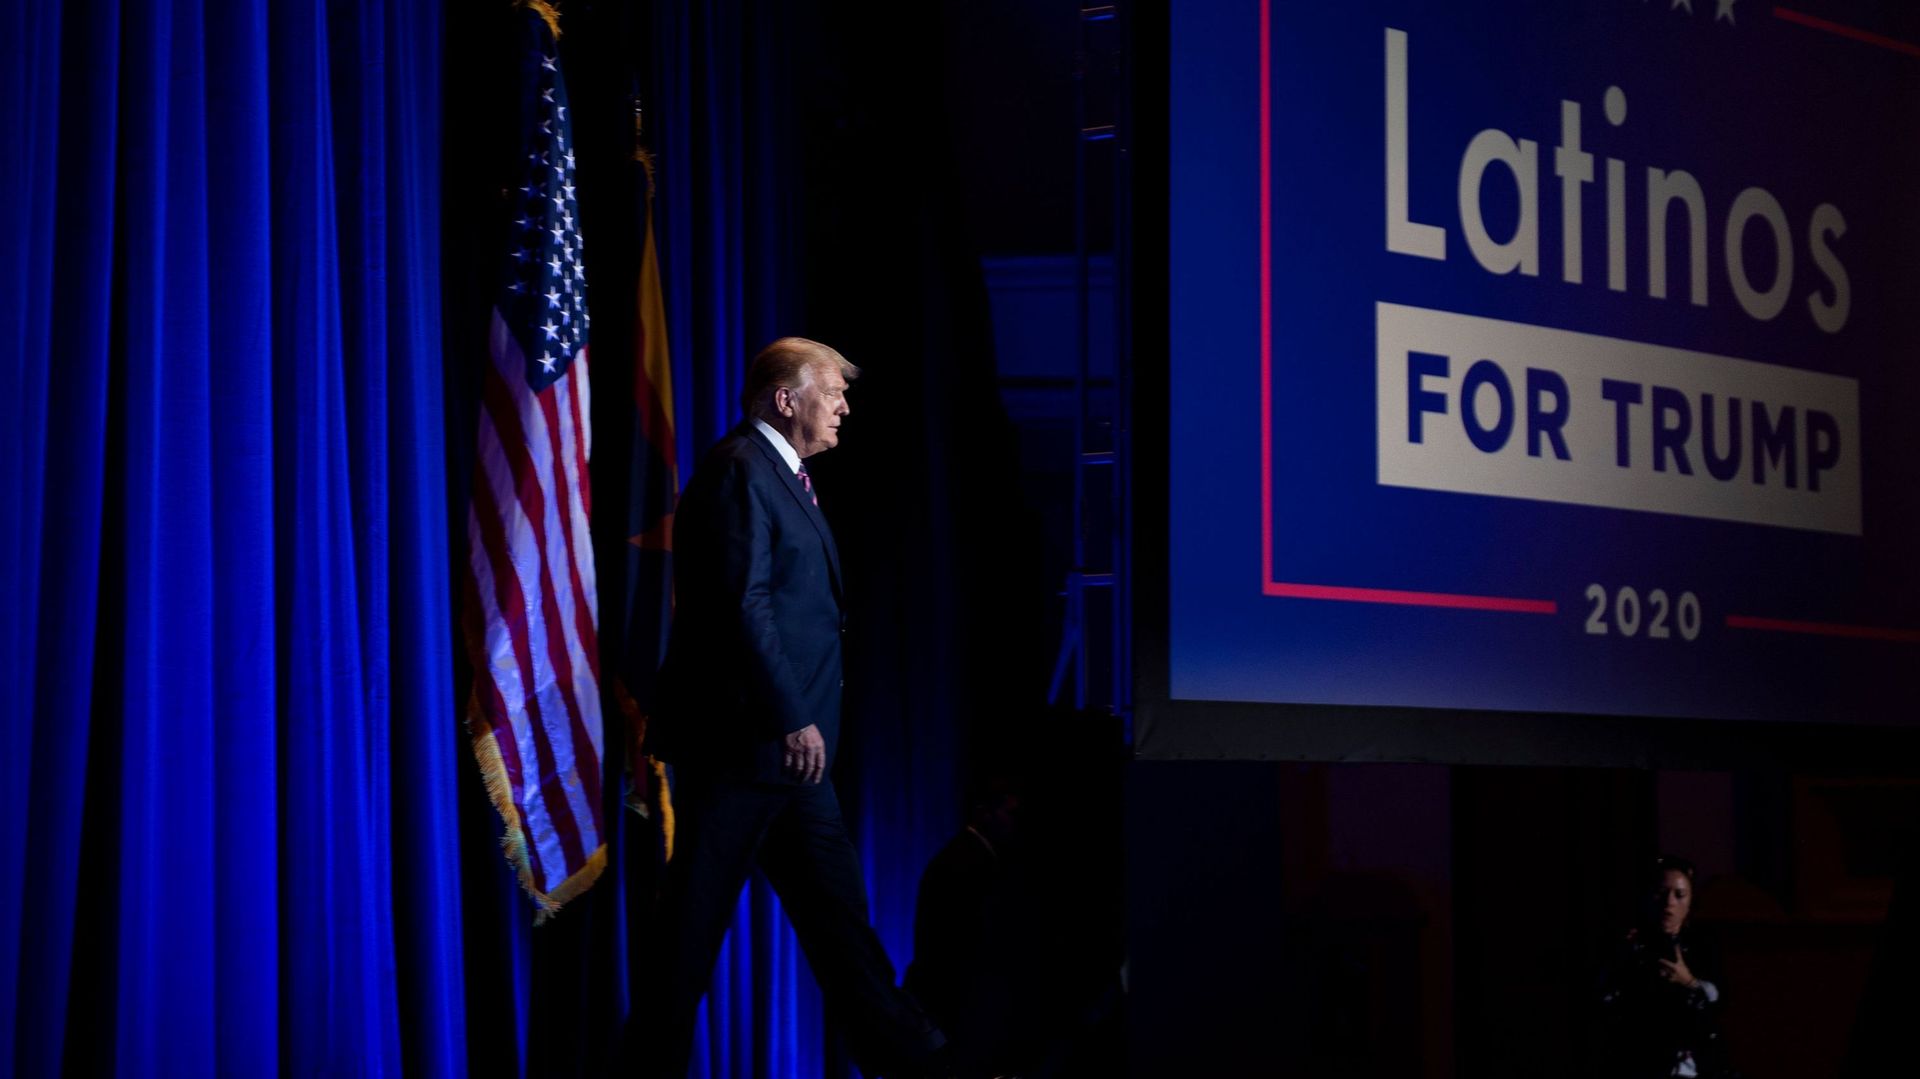 Le président des Etats-Unis, Donald Trump, assiste à un événement appelé "Latinos For Trump" le 14 septembre 2020 à Phoenix, Arizona.